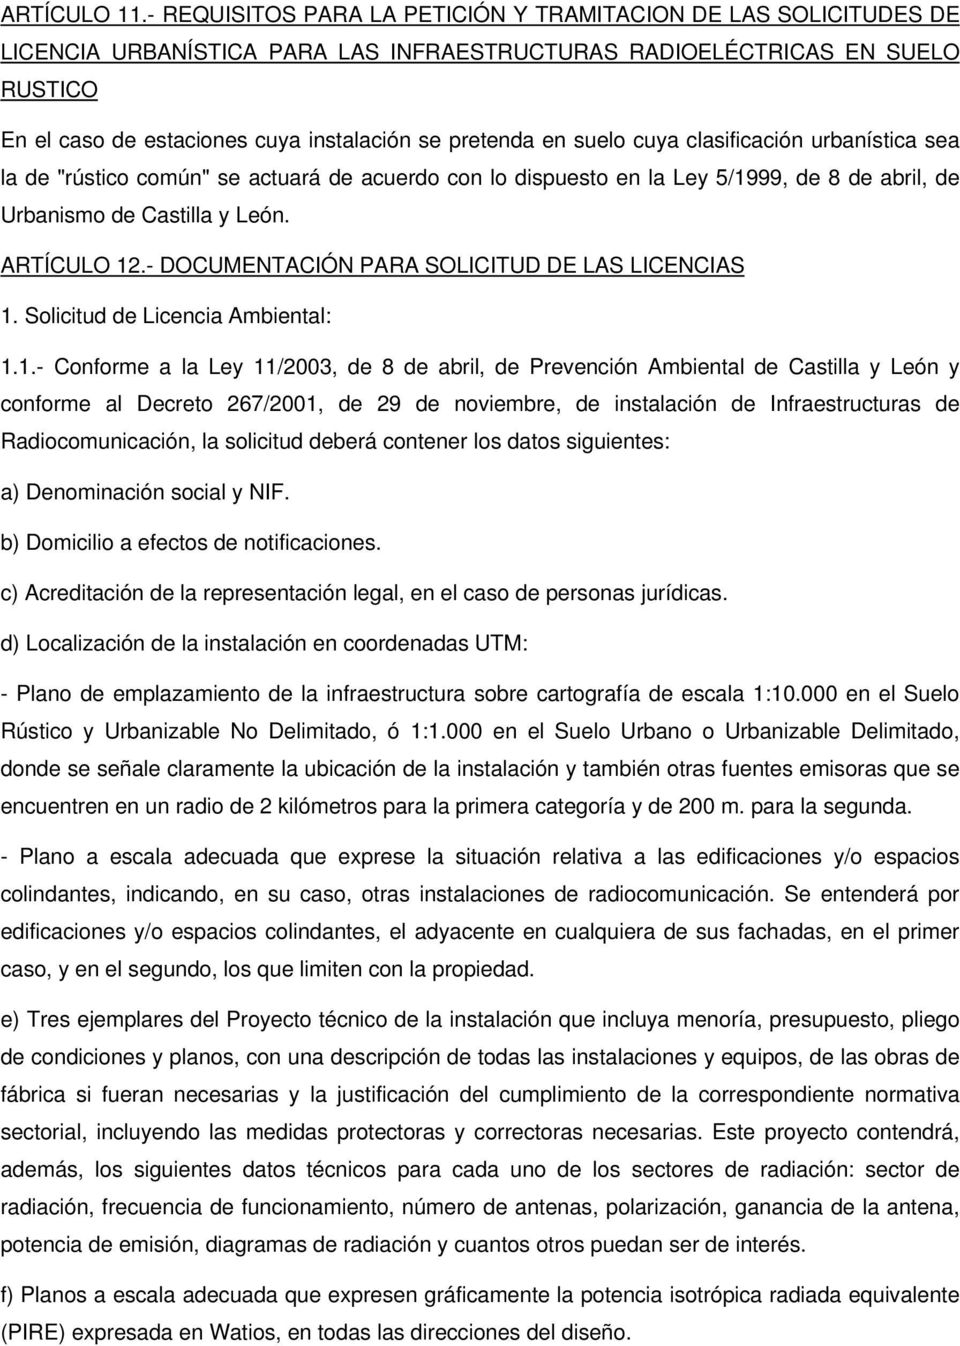 en suelo cuya clasificación urbanística sea la de "rústico común" se actuará de acuerdo con lo dispuesto en la Ley 5/1999, de 8 de abril, de Urbanismo de Castilla y León. ARTÍCULO 12.